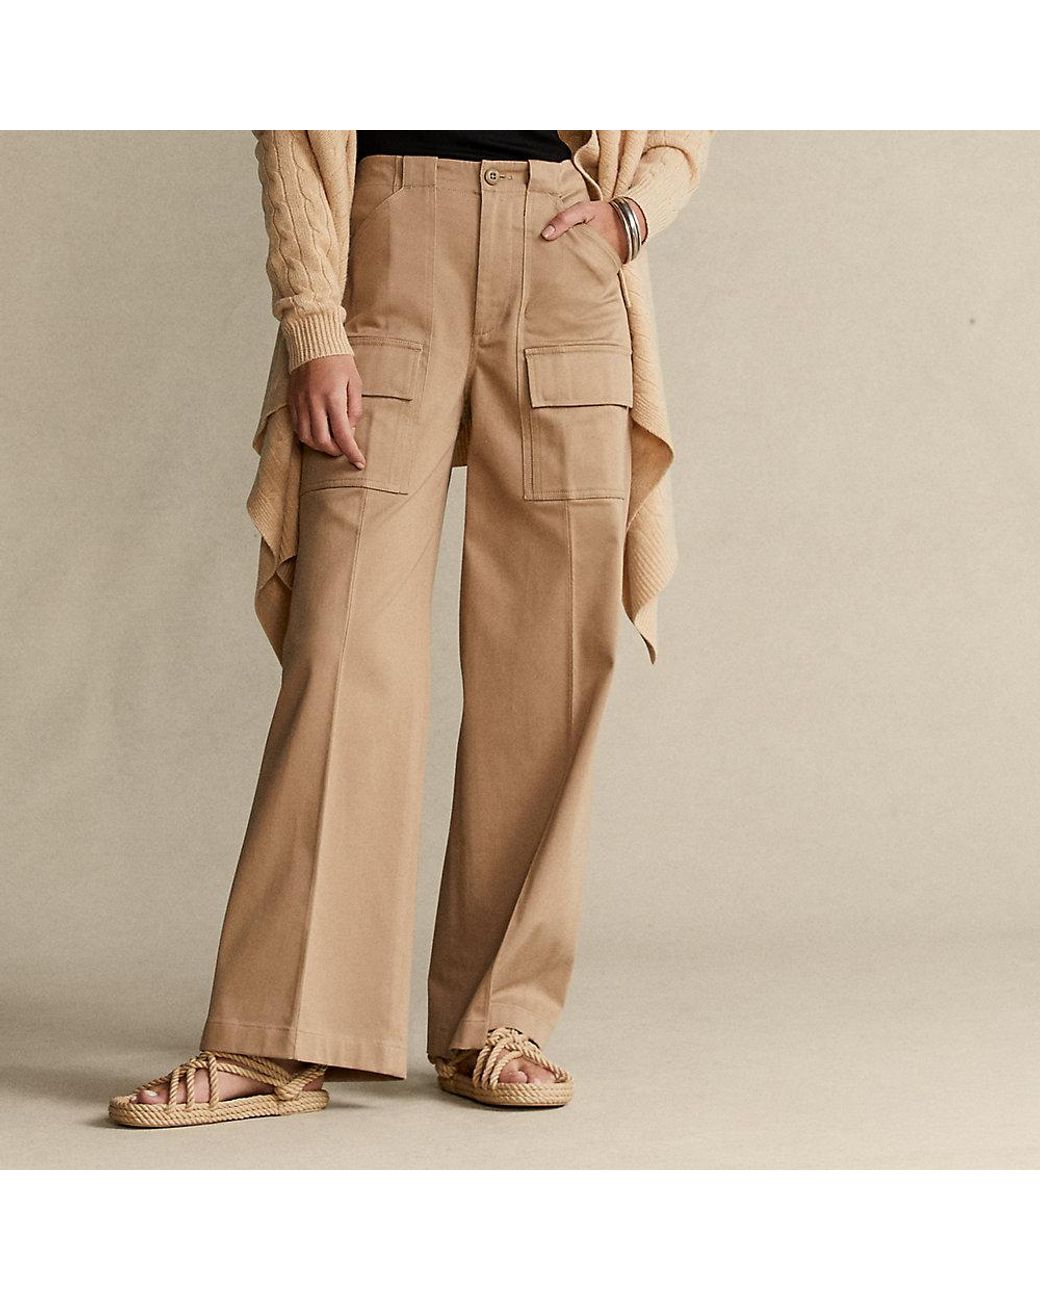 Lauren Ralph Lauren Women's Stretch Cotton Cargo Pants